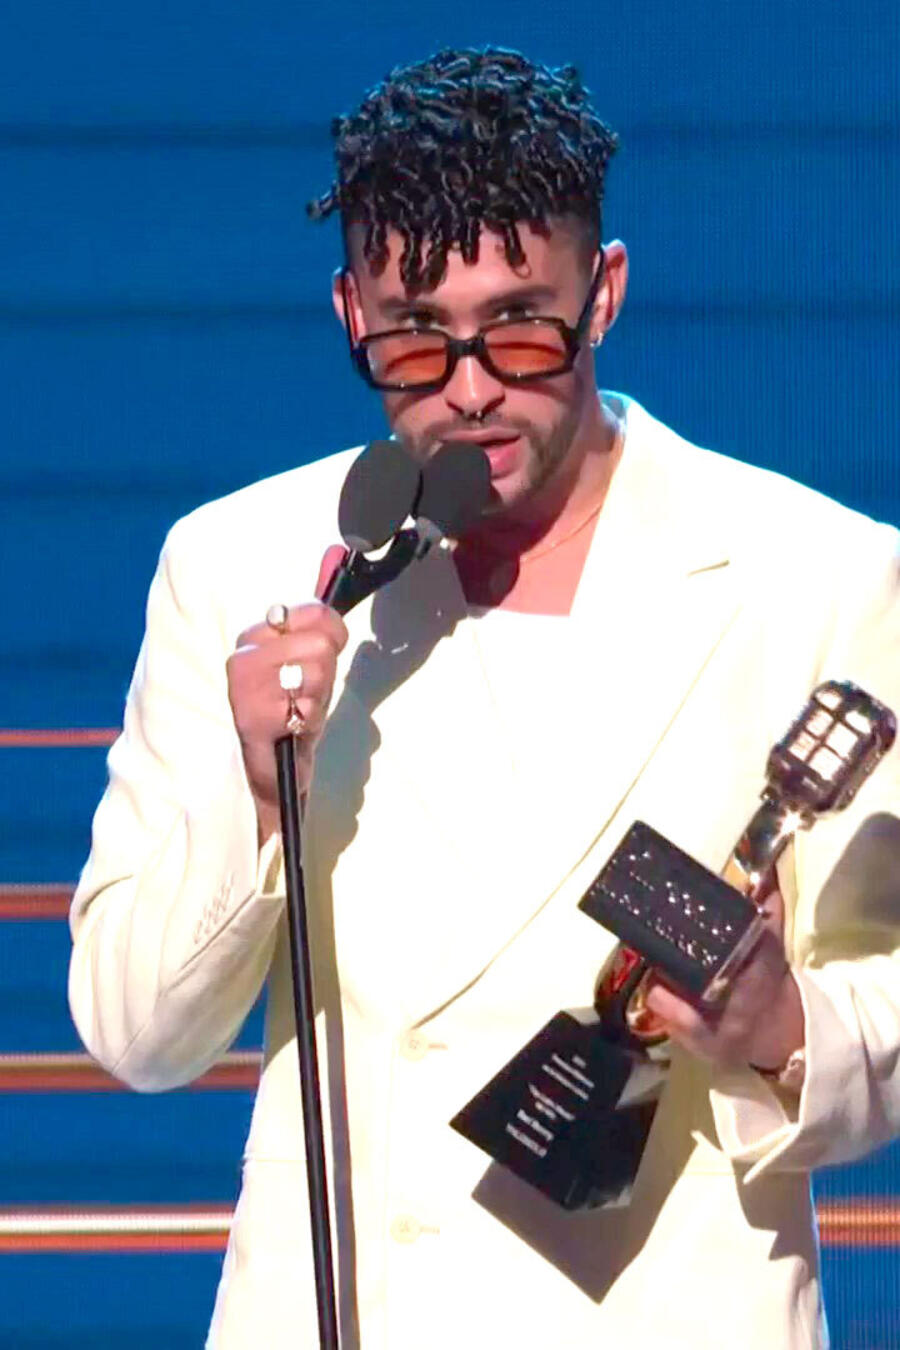 Bad Bunny acepta su premio a "Top Latin Album del Año" durante los Premios Billbaord 2021 en el Watsco Center de Miami, Florida el 23 de septiembre en el vistiendo una traje satinado de color blanco, camiseta blanca, gafas de sol de marco negro y zapatos 